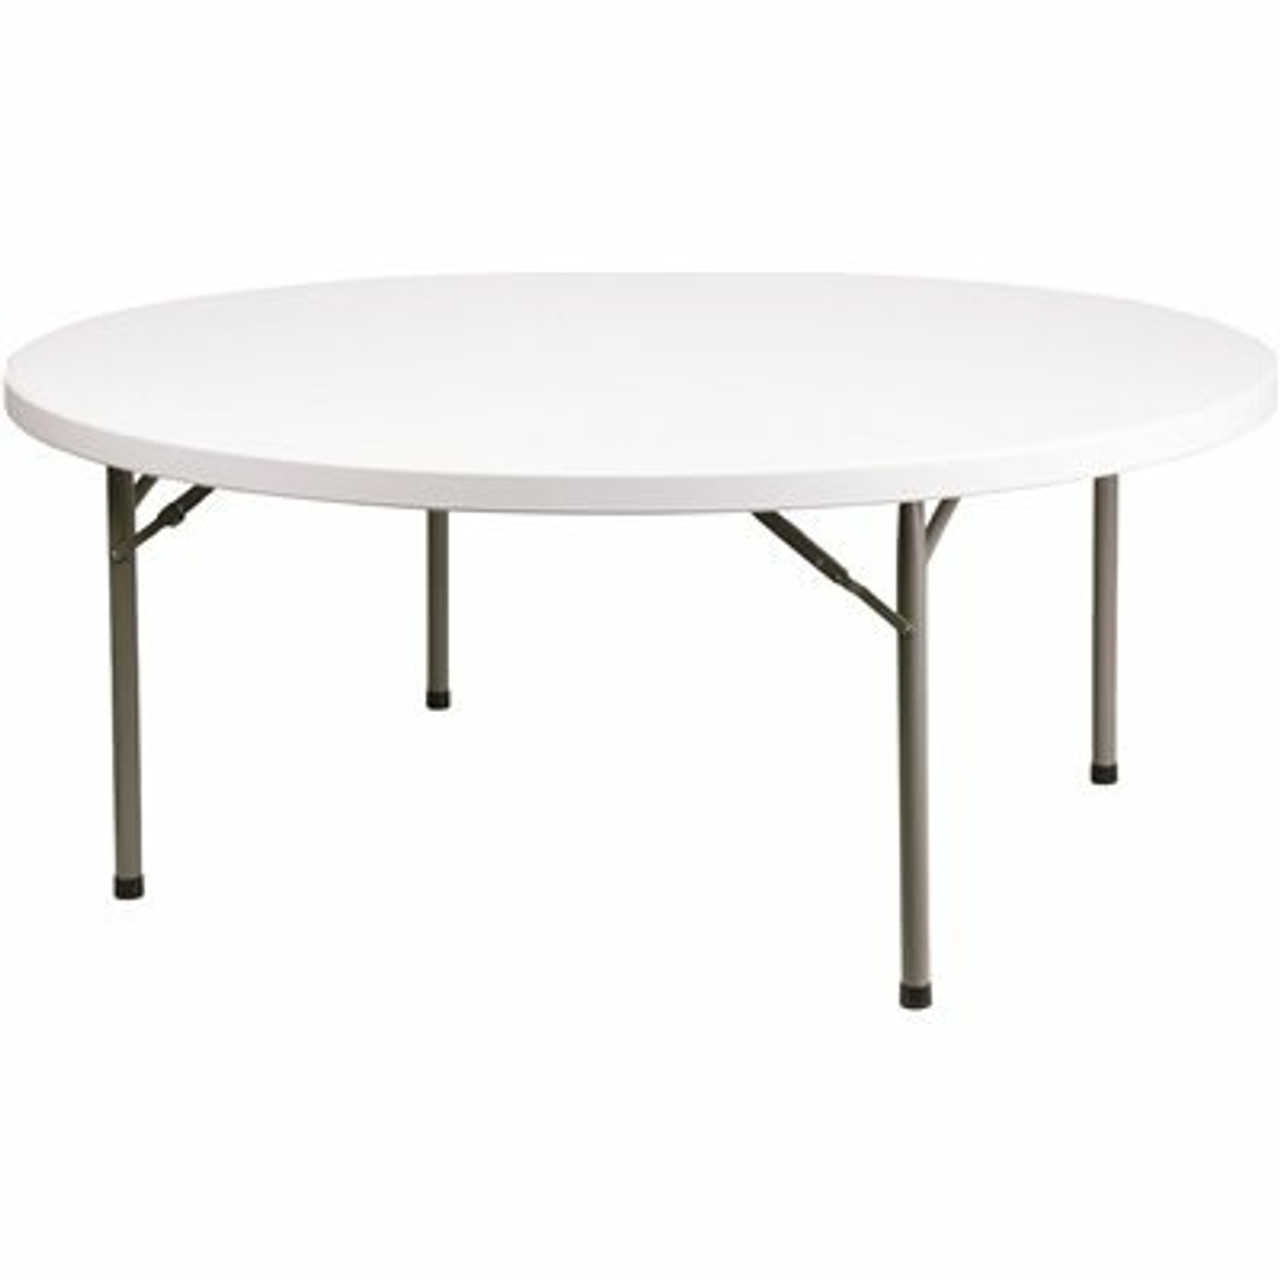 71 In. Granite White Plastic Tabletop Metal Frame Folding Table - 308685765